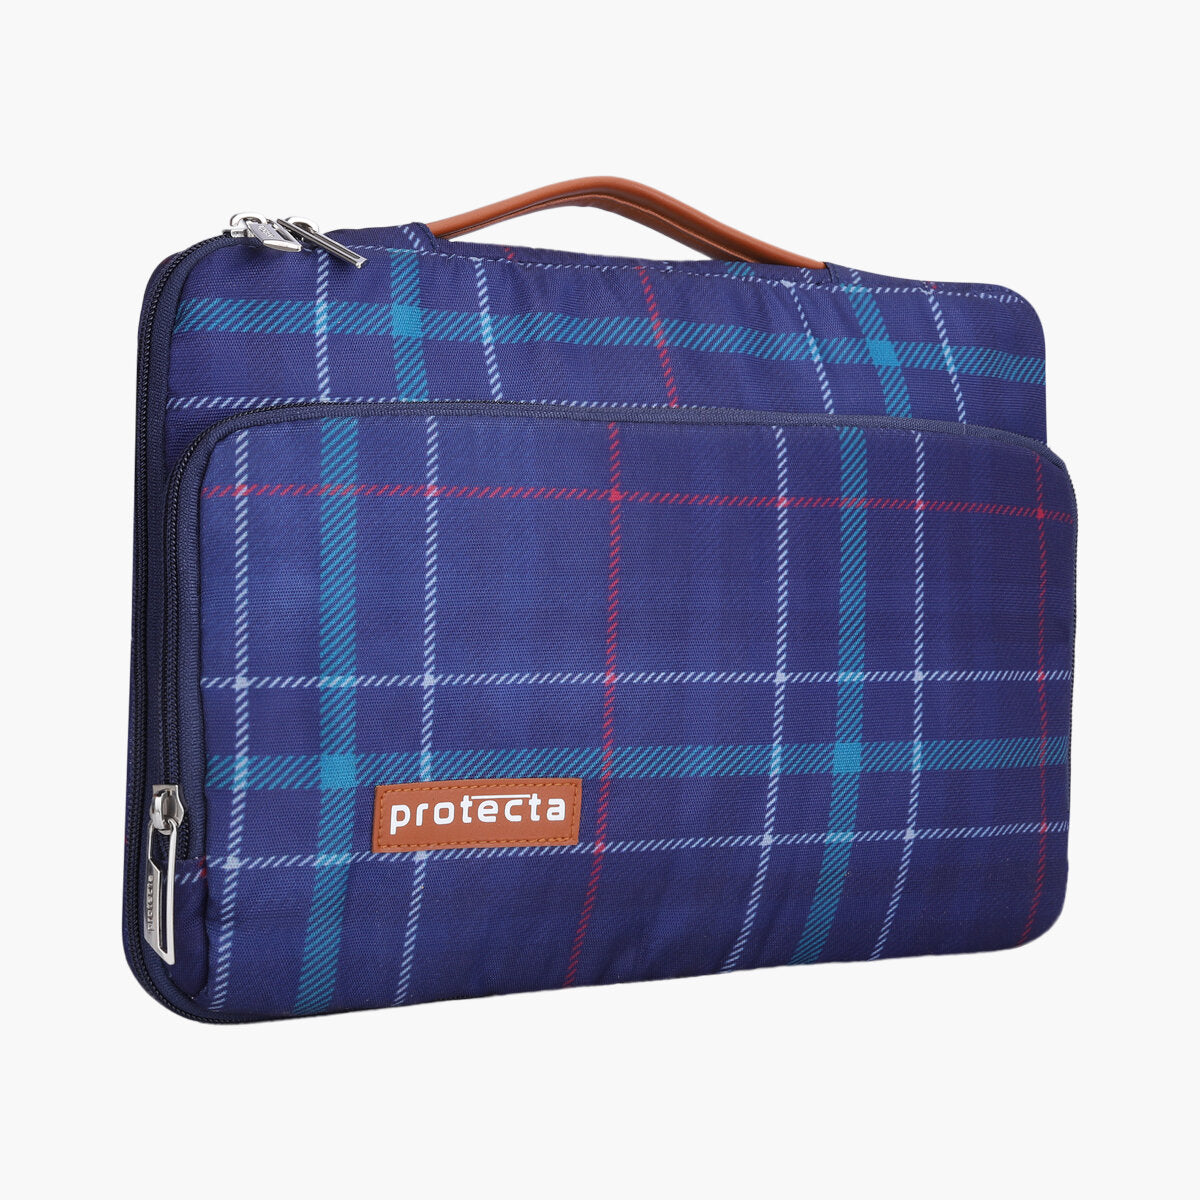 Plaid Print | Protecta Oscar Laptop Bag